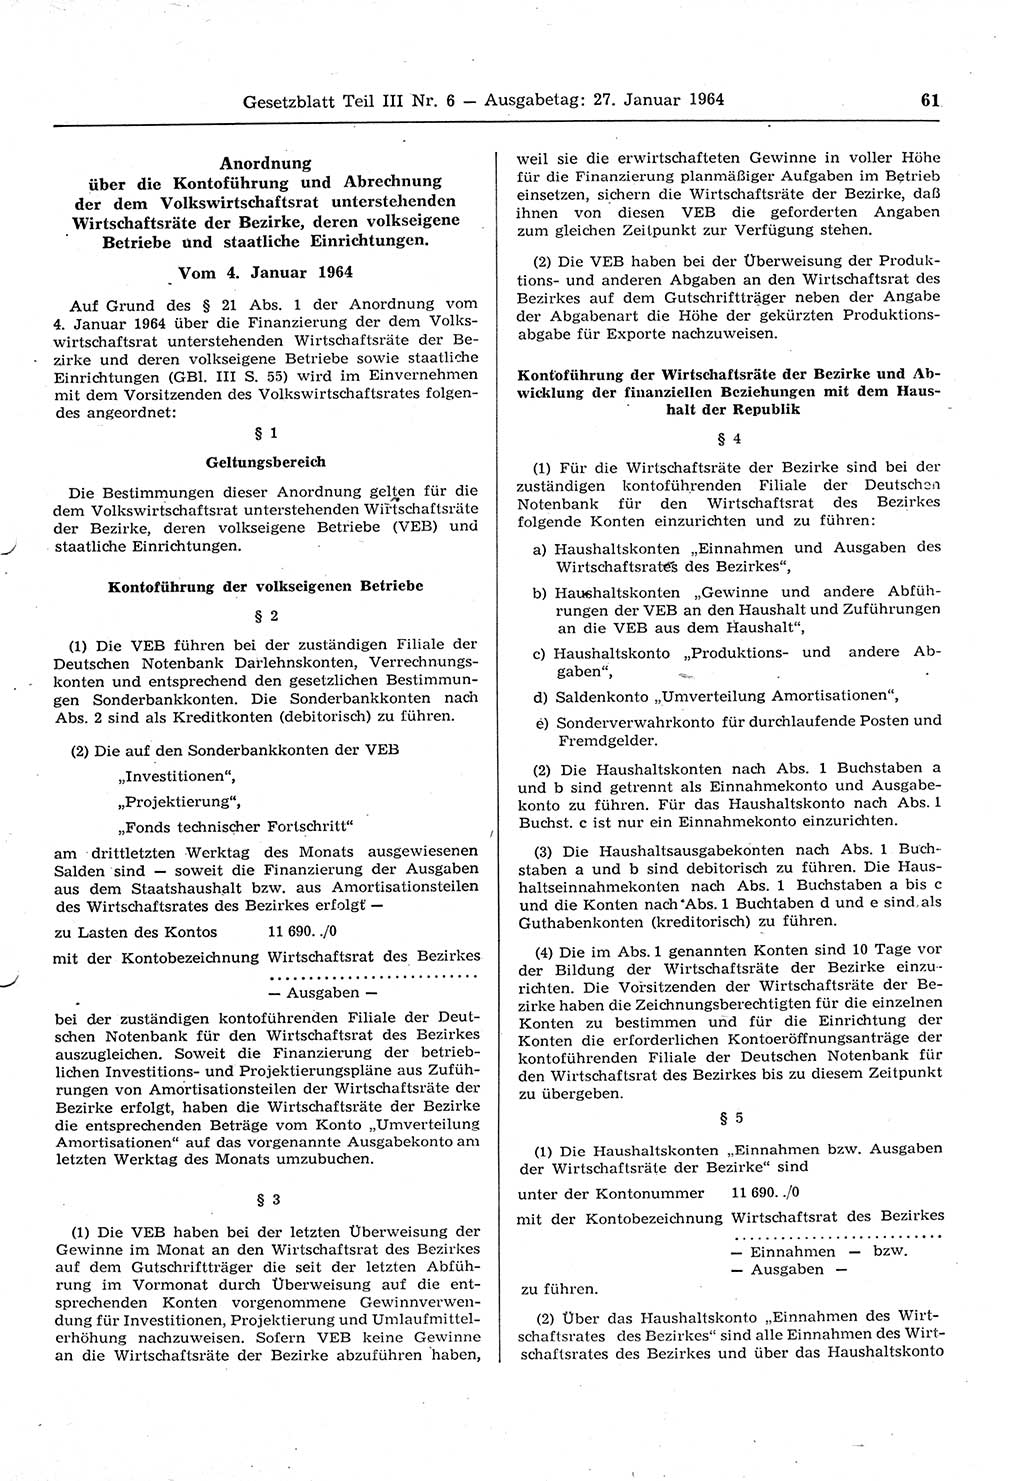 Gesetzblatt (GBl.) der Deutschen Demokratischen Republik (DDR) Teil ⅠⅠⅠ 1964, Seite 61 (GBl. DDR ⅠⅠⅠ 1964, S. 61)